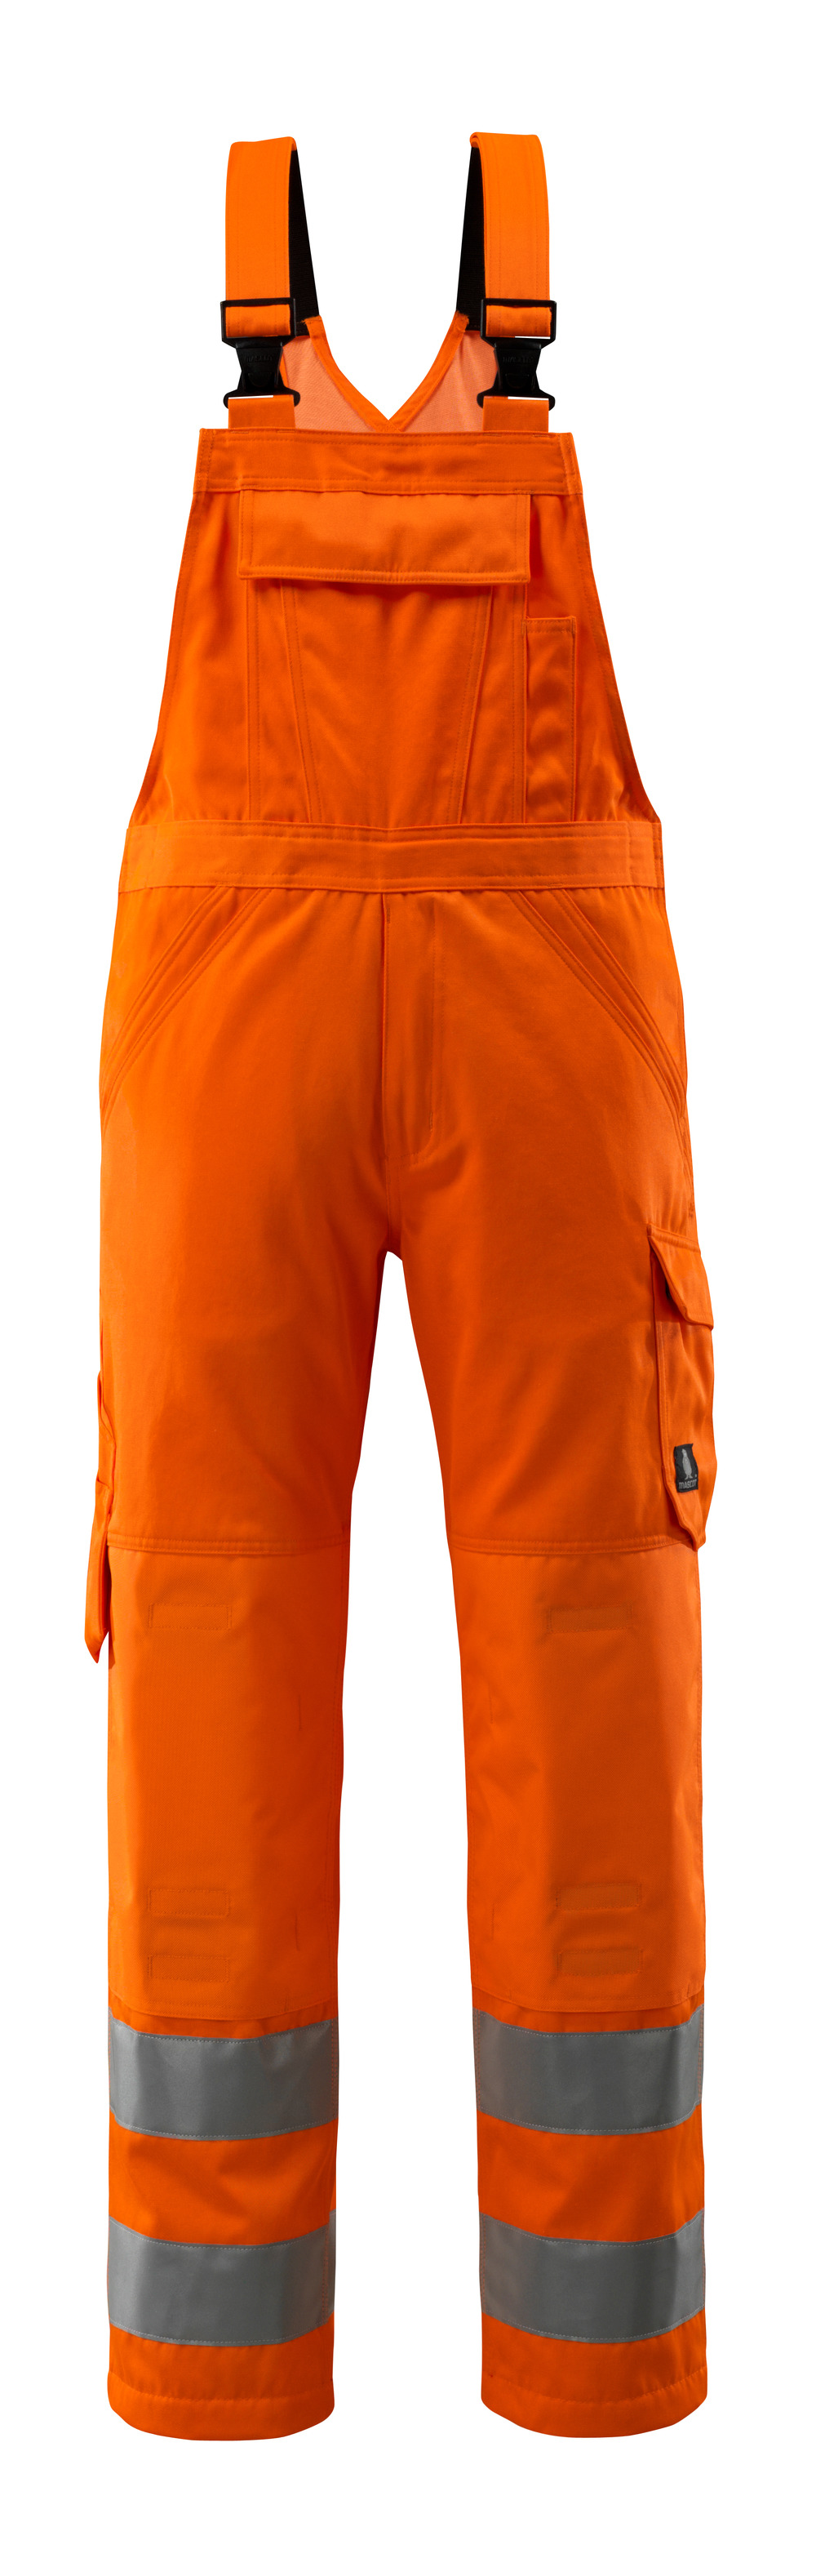 MASCOT-Warnschutz, Warn-Latzhose, Devonport,  Lg. 82 cm, 290 g/m², orange

